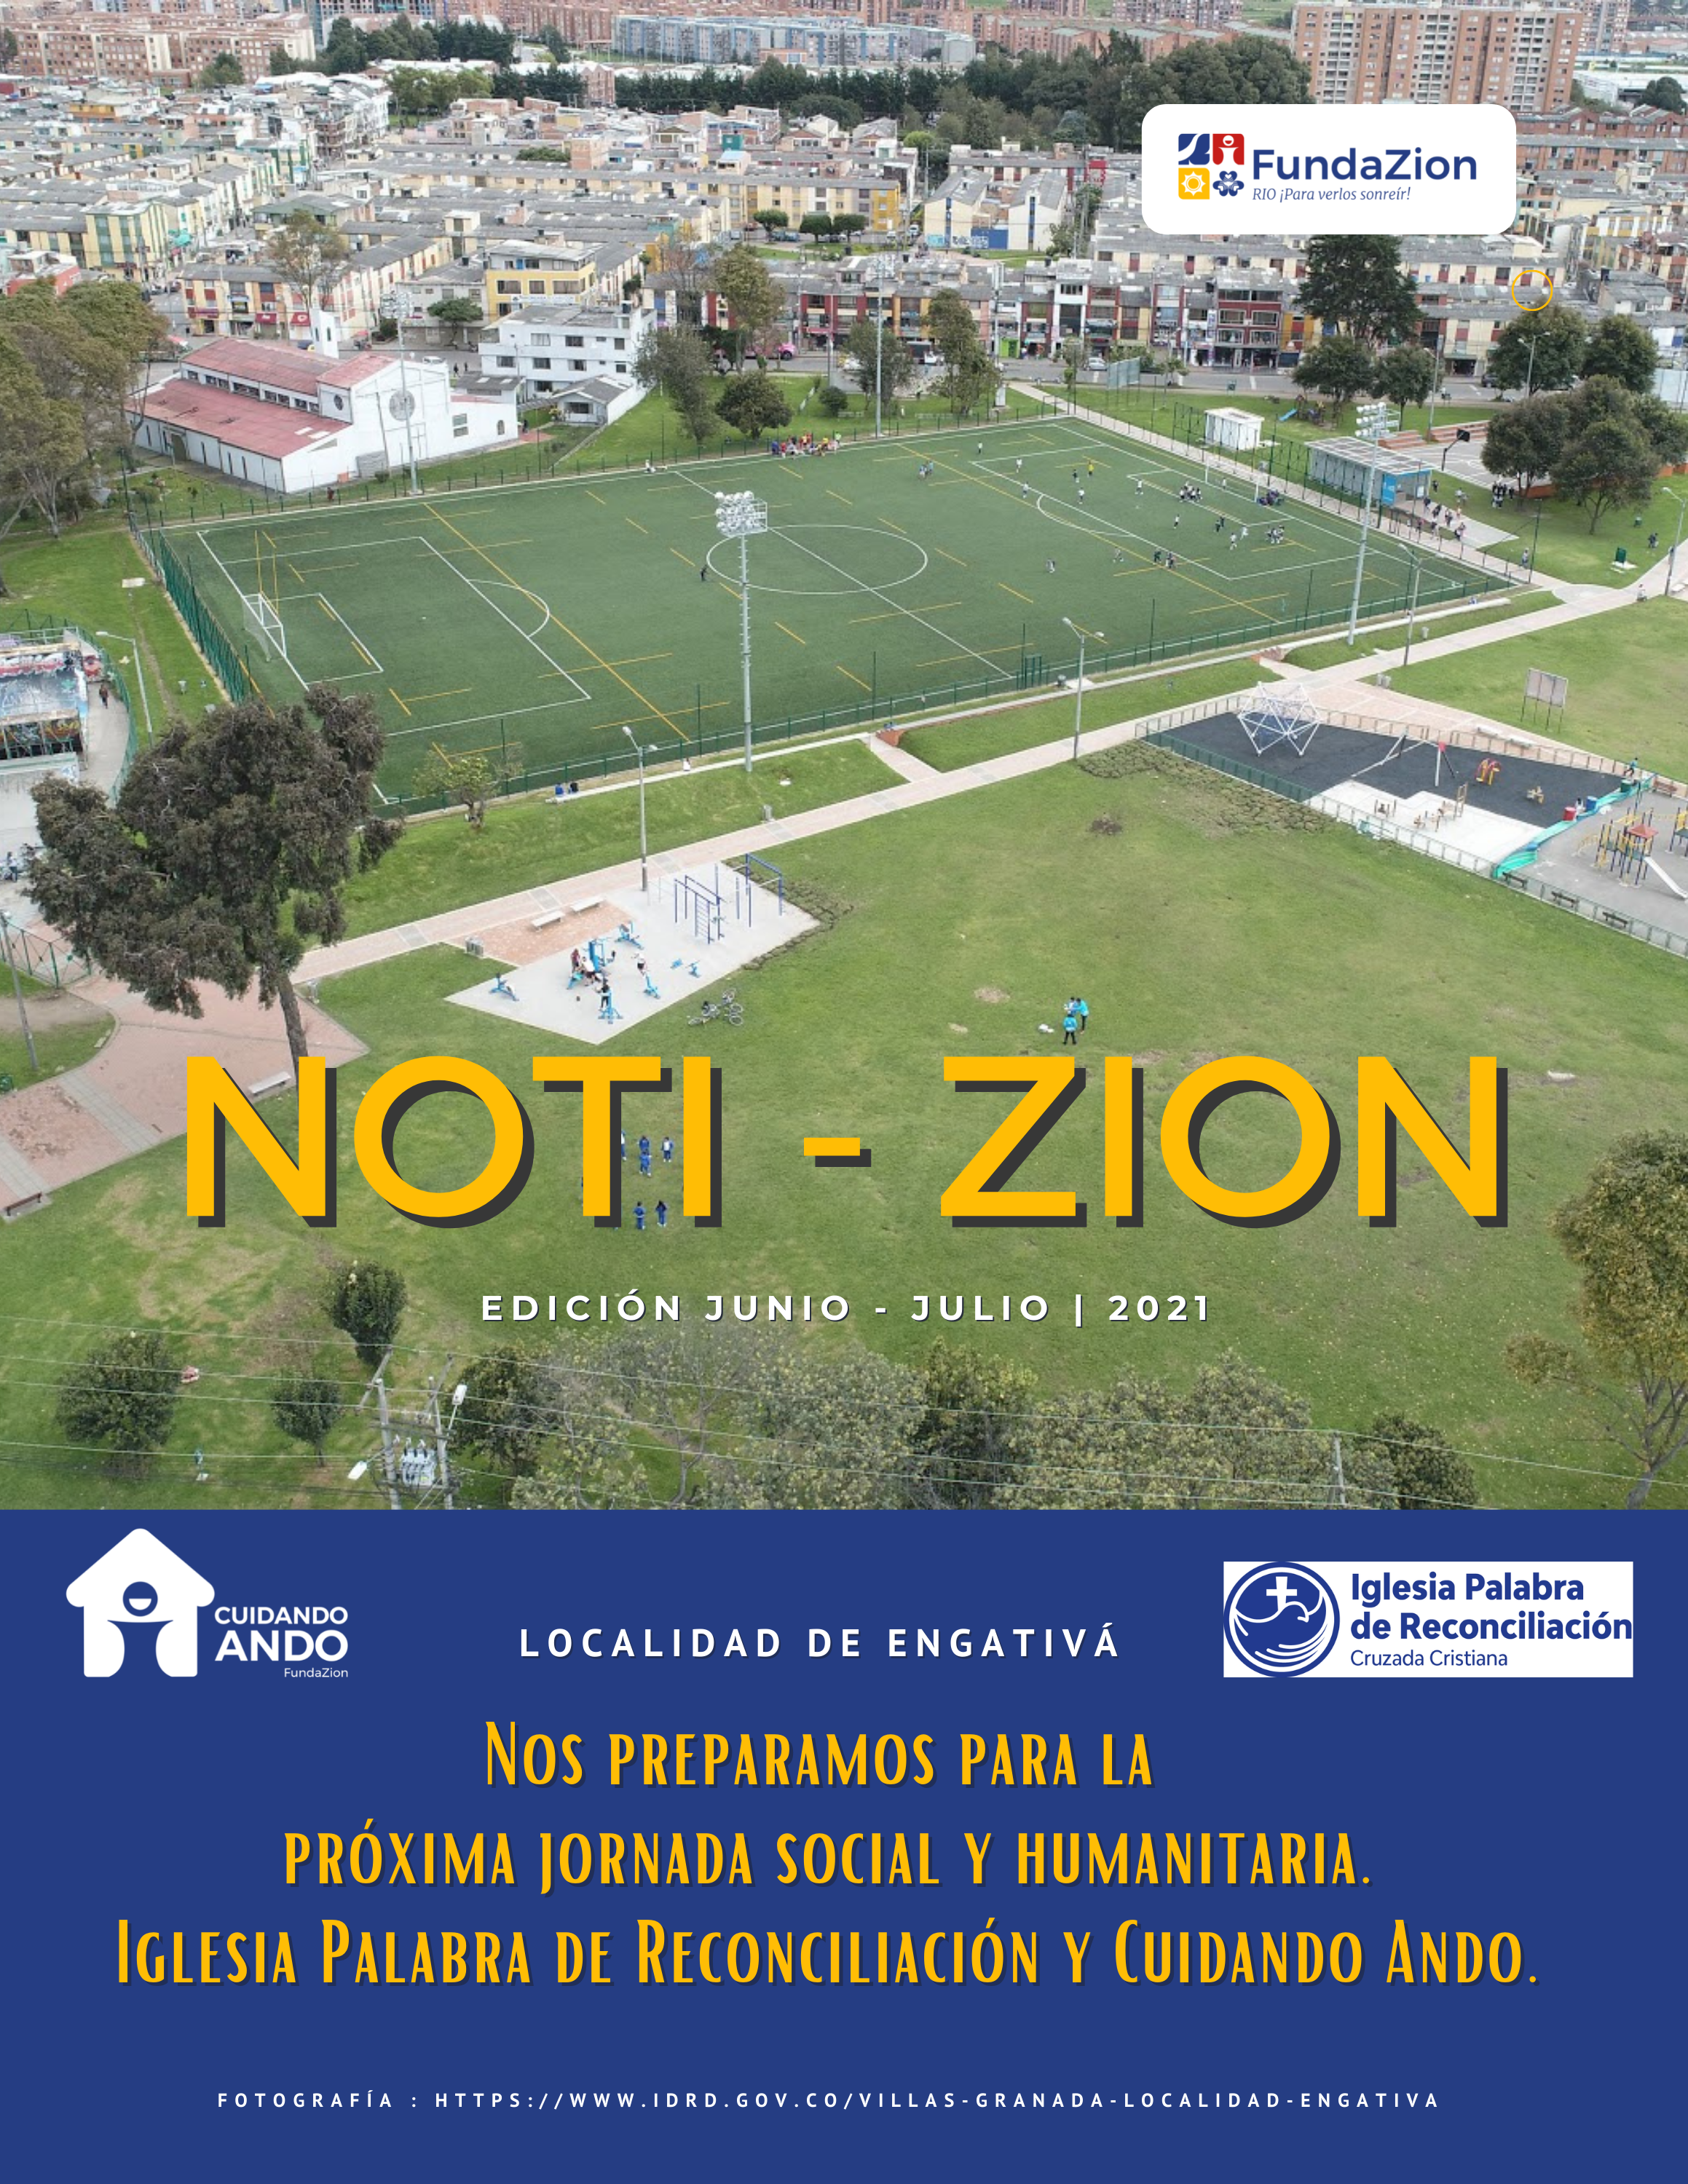 Copy of Noti-Zion_Edición marzomayo 2021 (1)